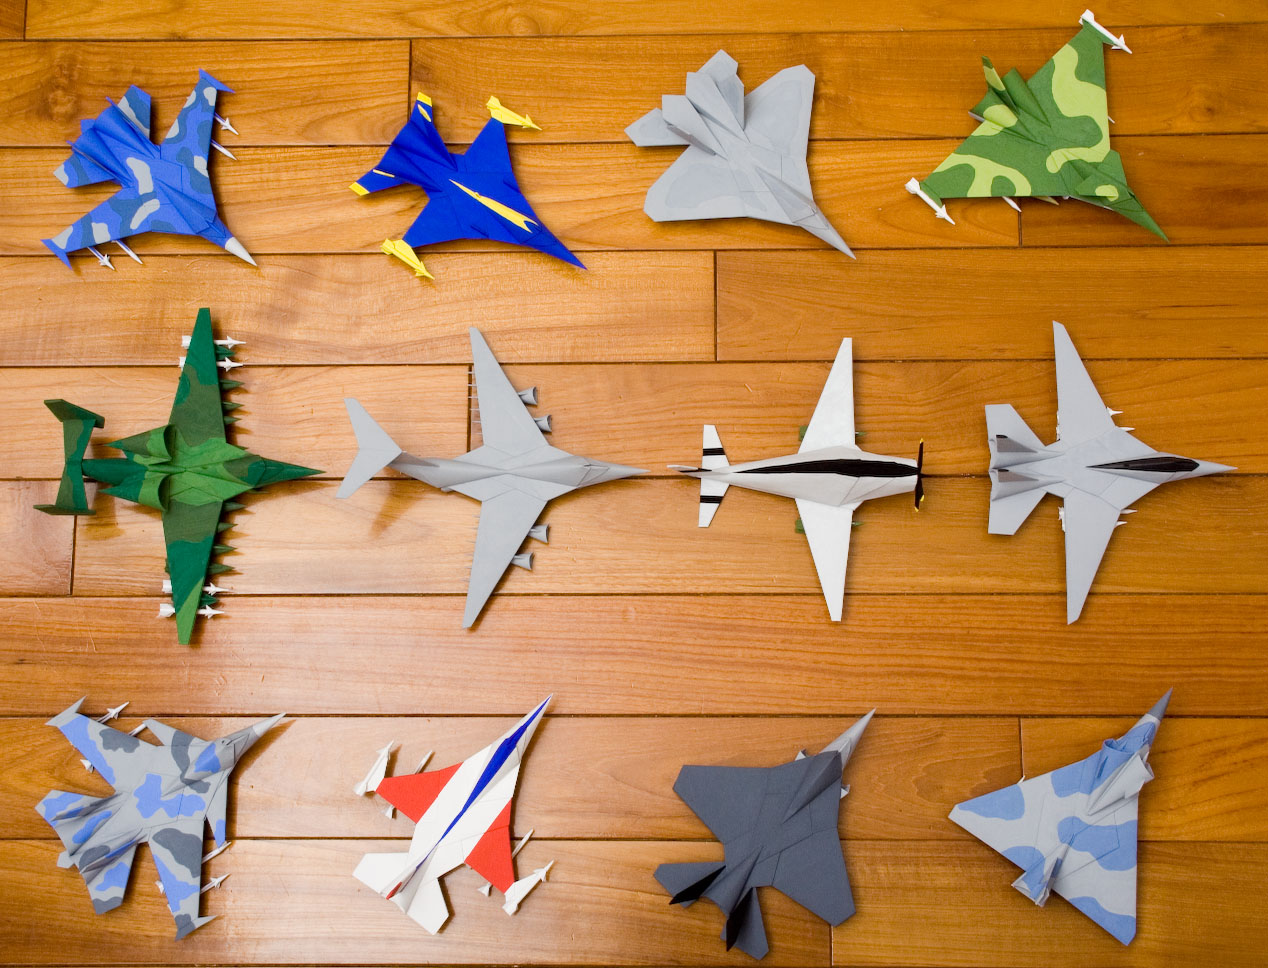 【折纸王子】能飞很远的折纸飞机 创世界记录的飞机折法 讲解详细 清楚易学 跟孩子一起学_哔哩哔哩 (゜-゜)つロ 干杯~-bilibili